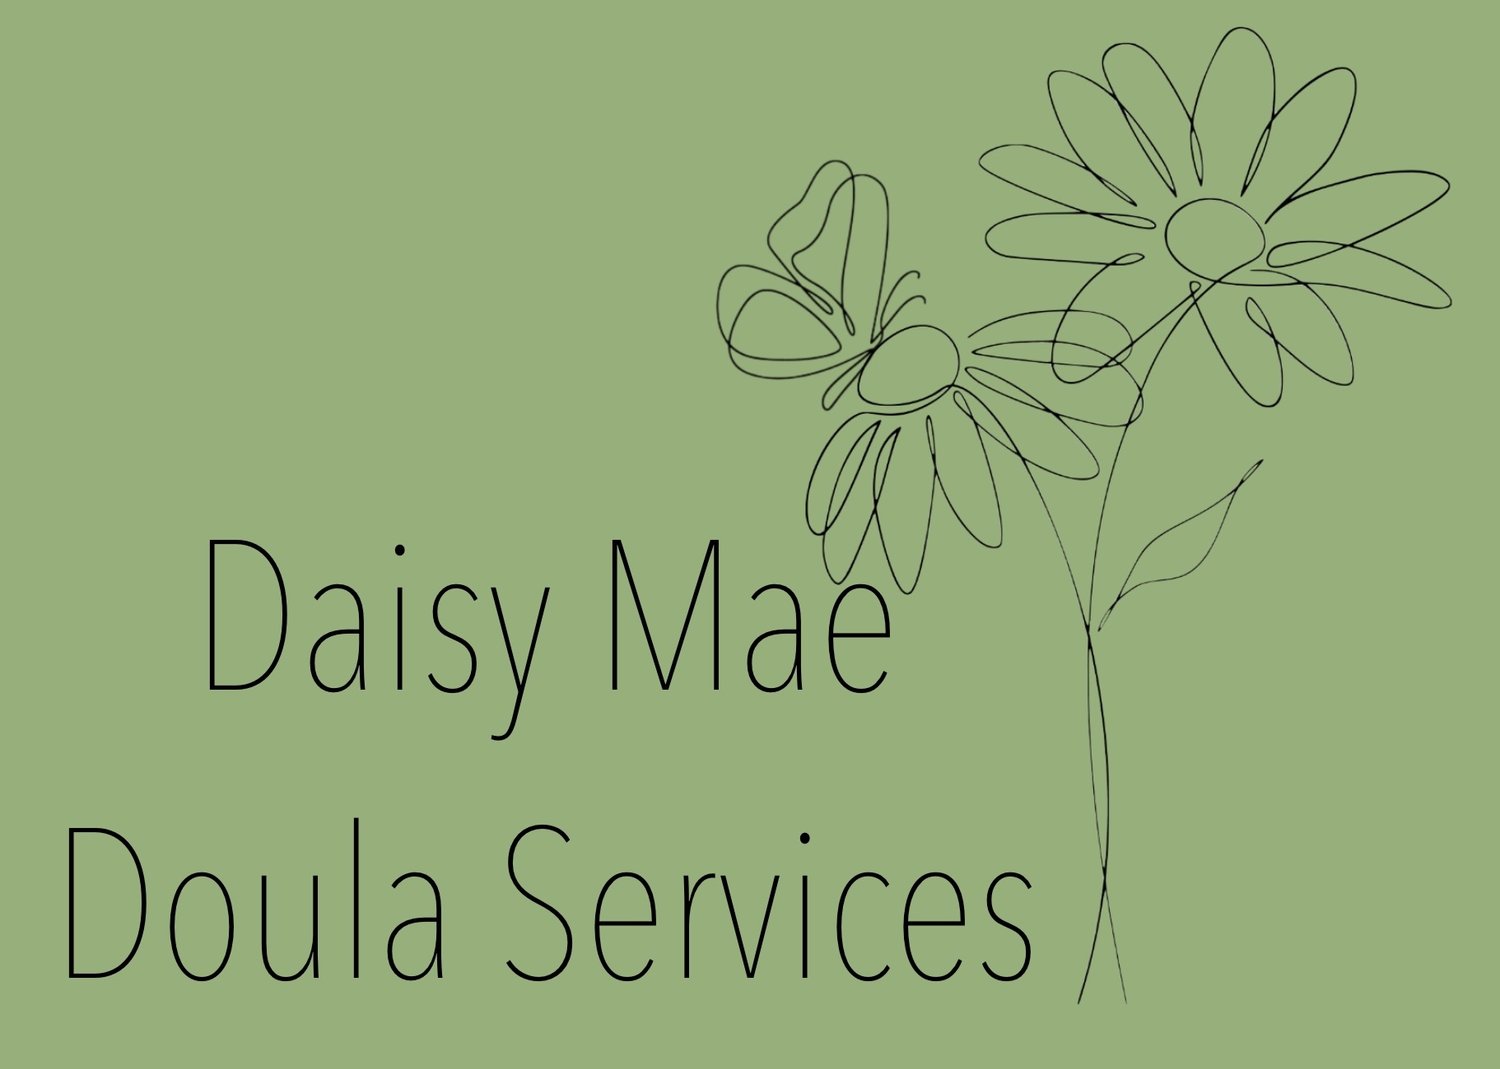 Daisy Mae Doula Services